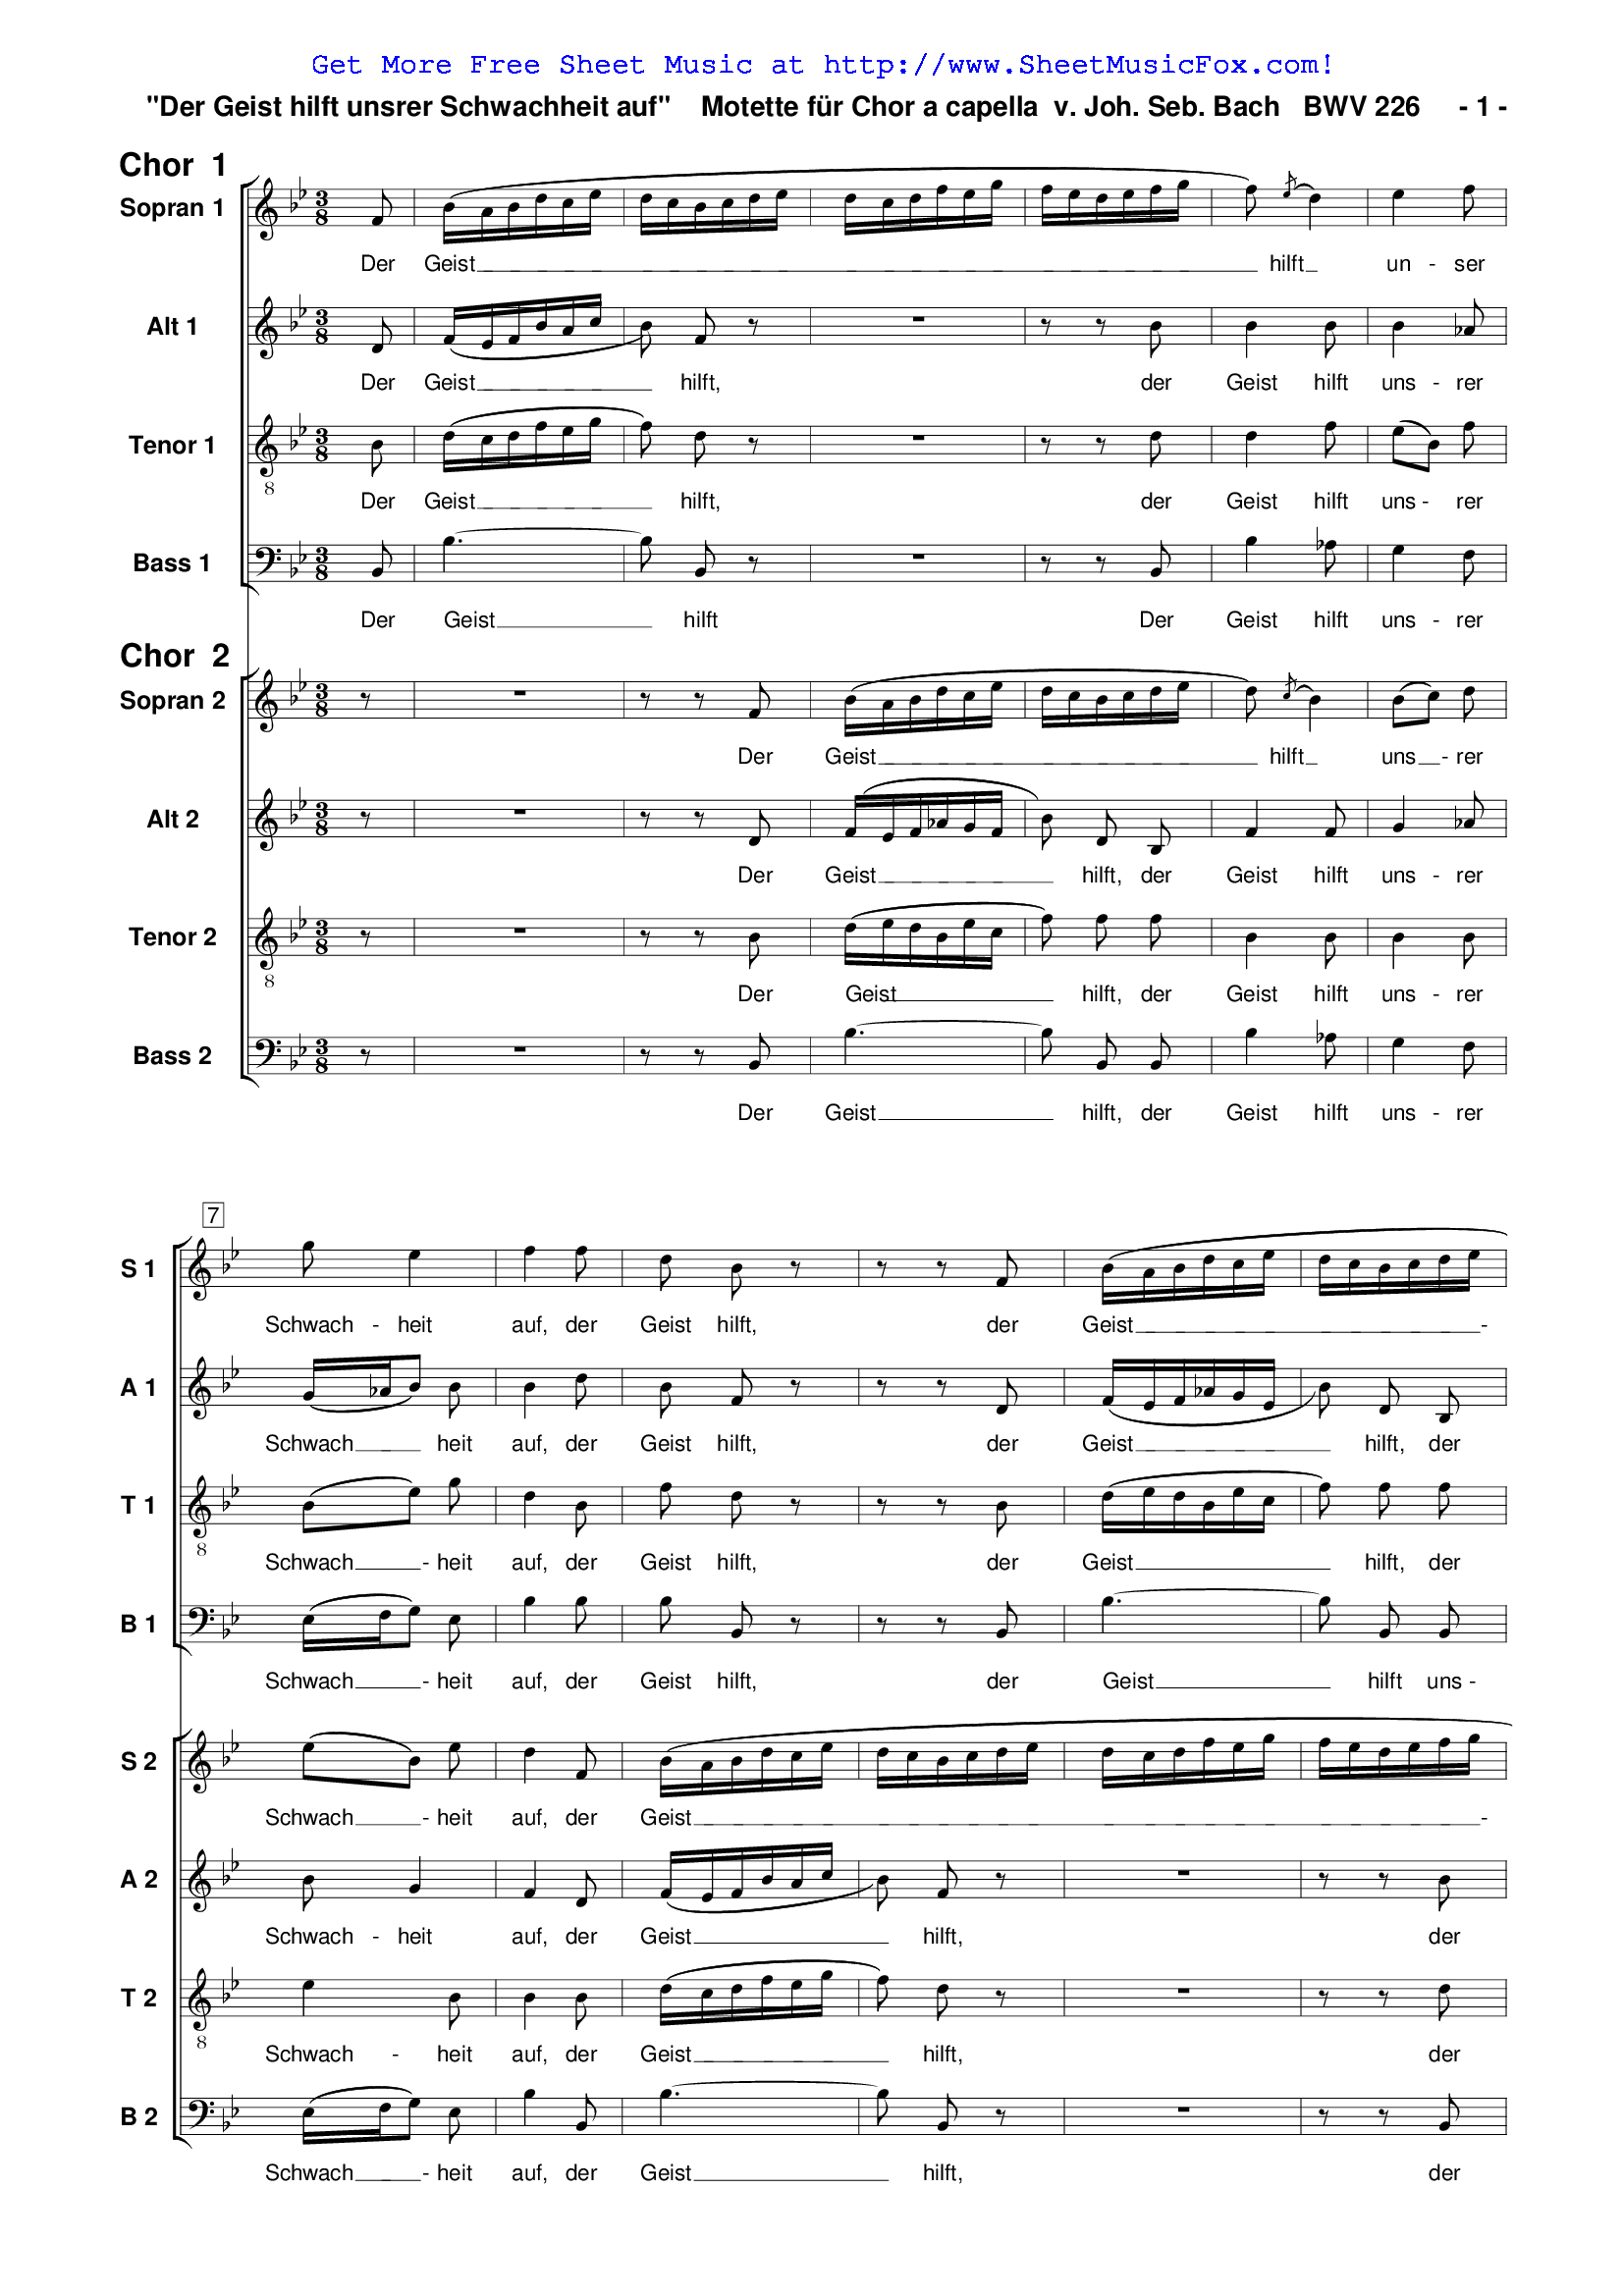 Free sheet music for Der Geist hilft unsrer Schwachheit auf, BWV 226 ...